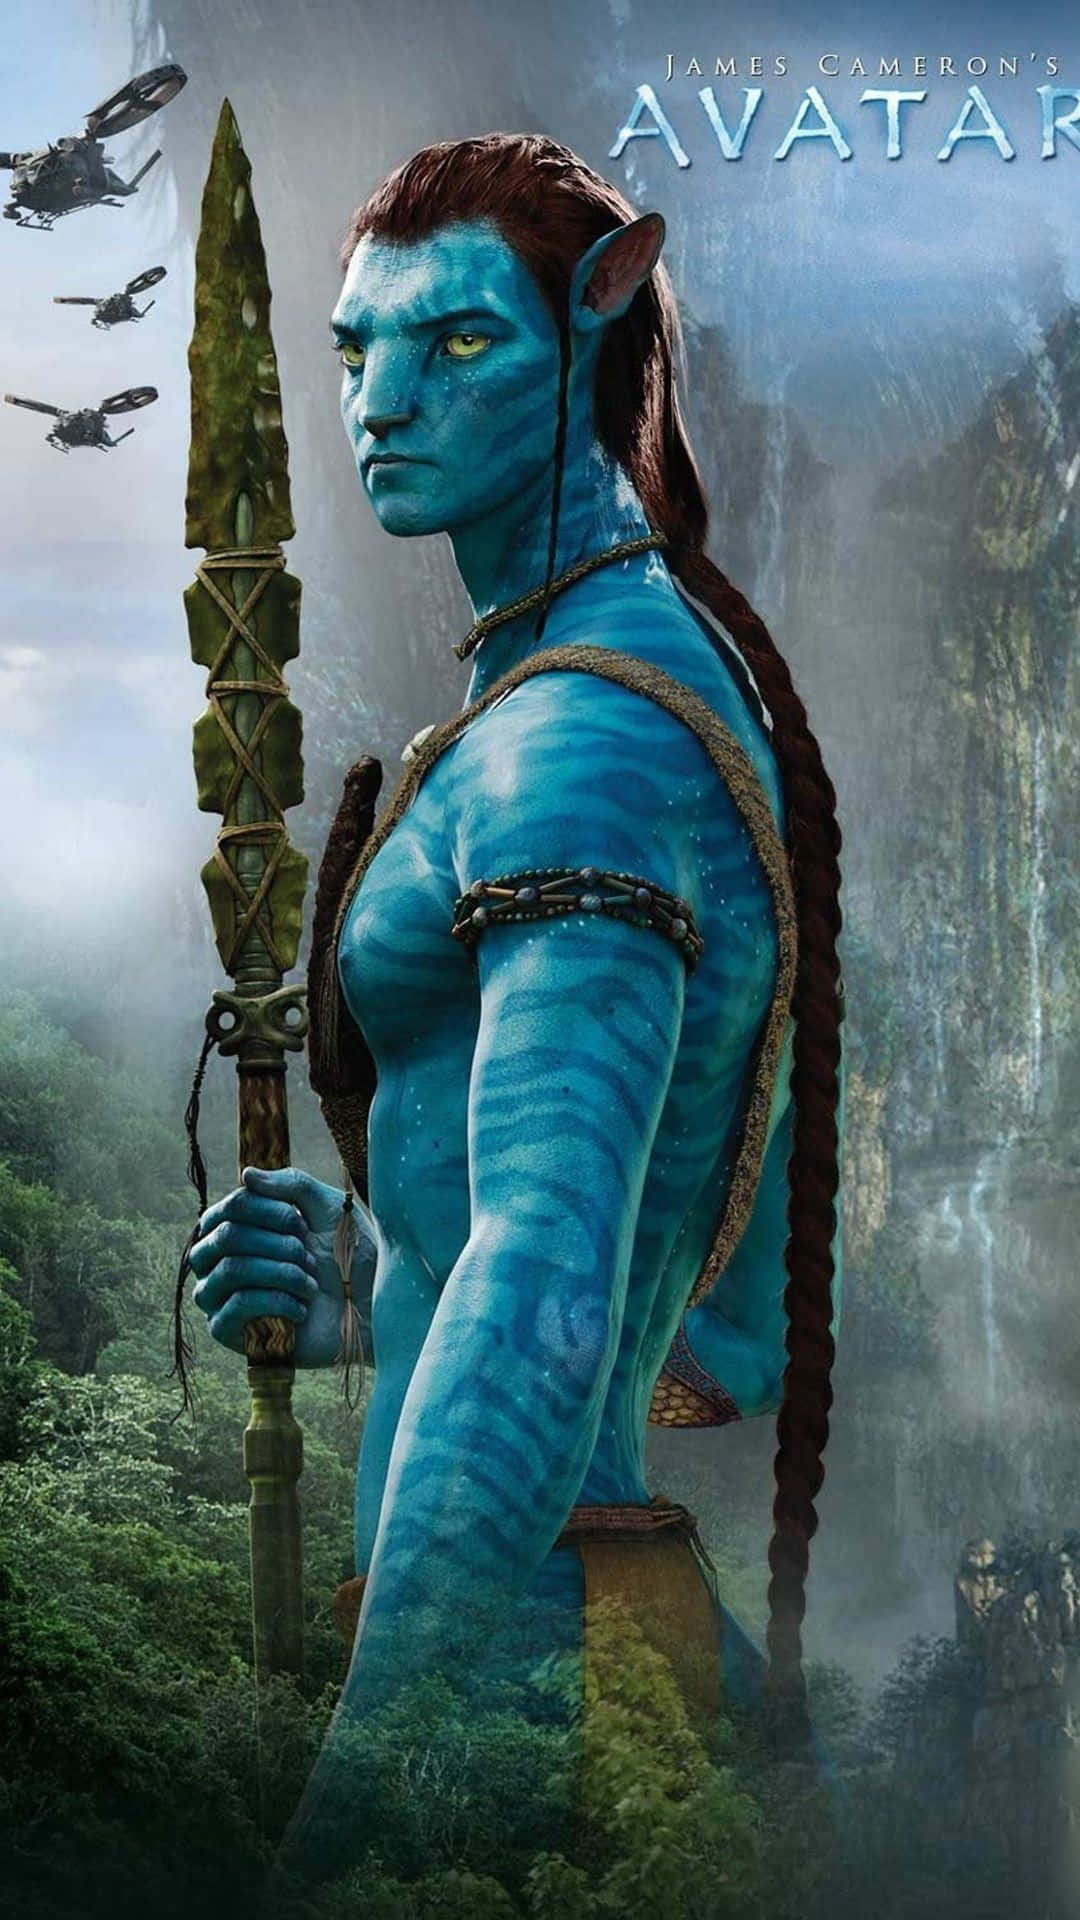 Enscen Från Den Episka Filmen Avatar